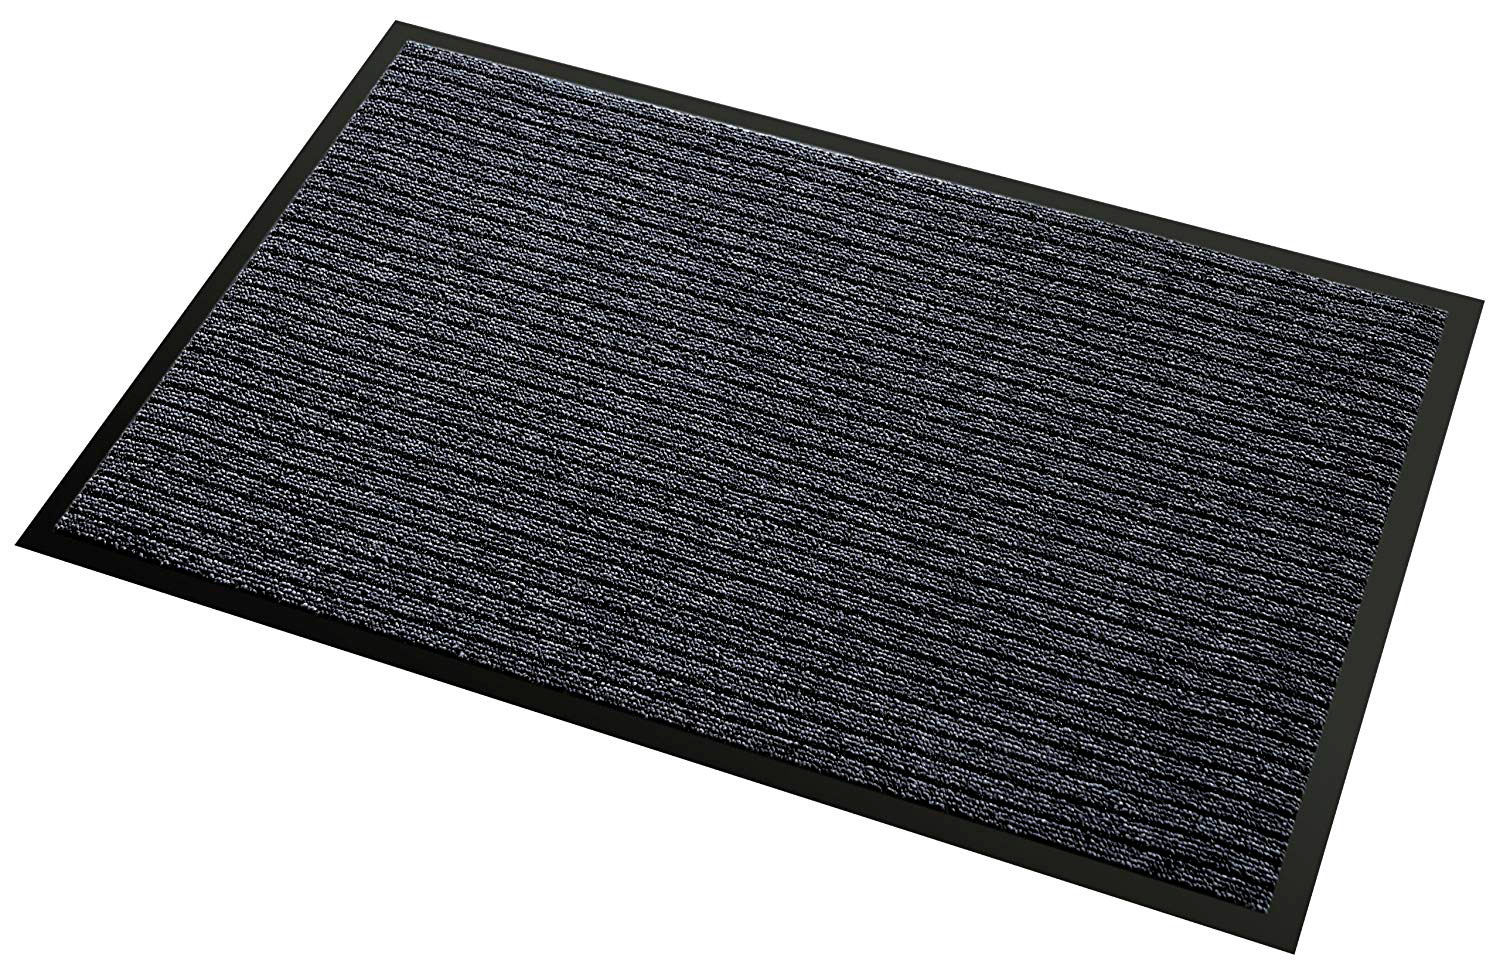 Nomad™ Aqua 45 textile entrance matting